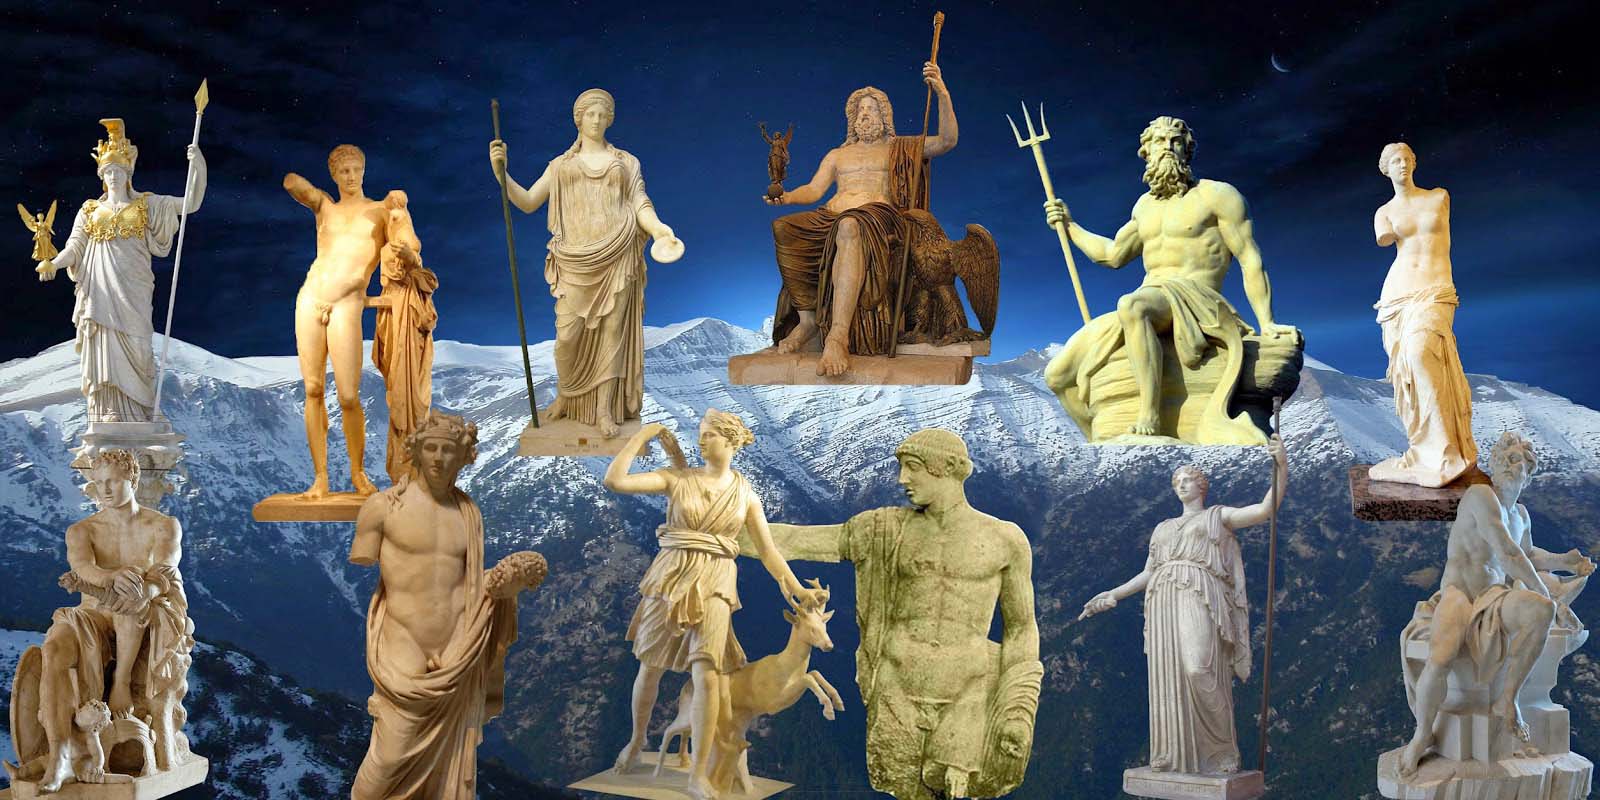 Εσείς γνωρίζατε ότι τα ονόματα των ολύμπιων θεών είχαν συμβολικές σημασίες;